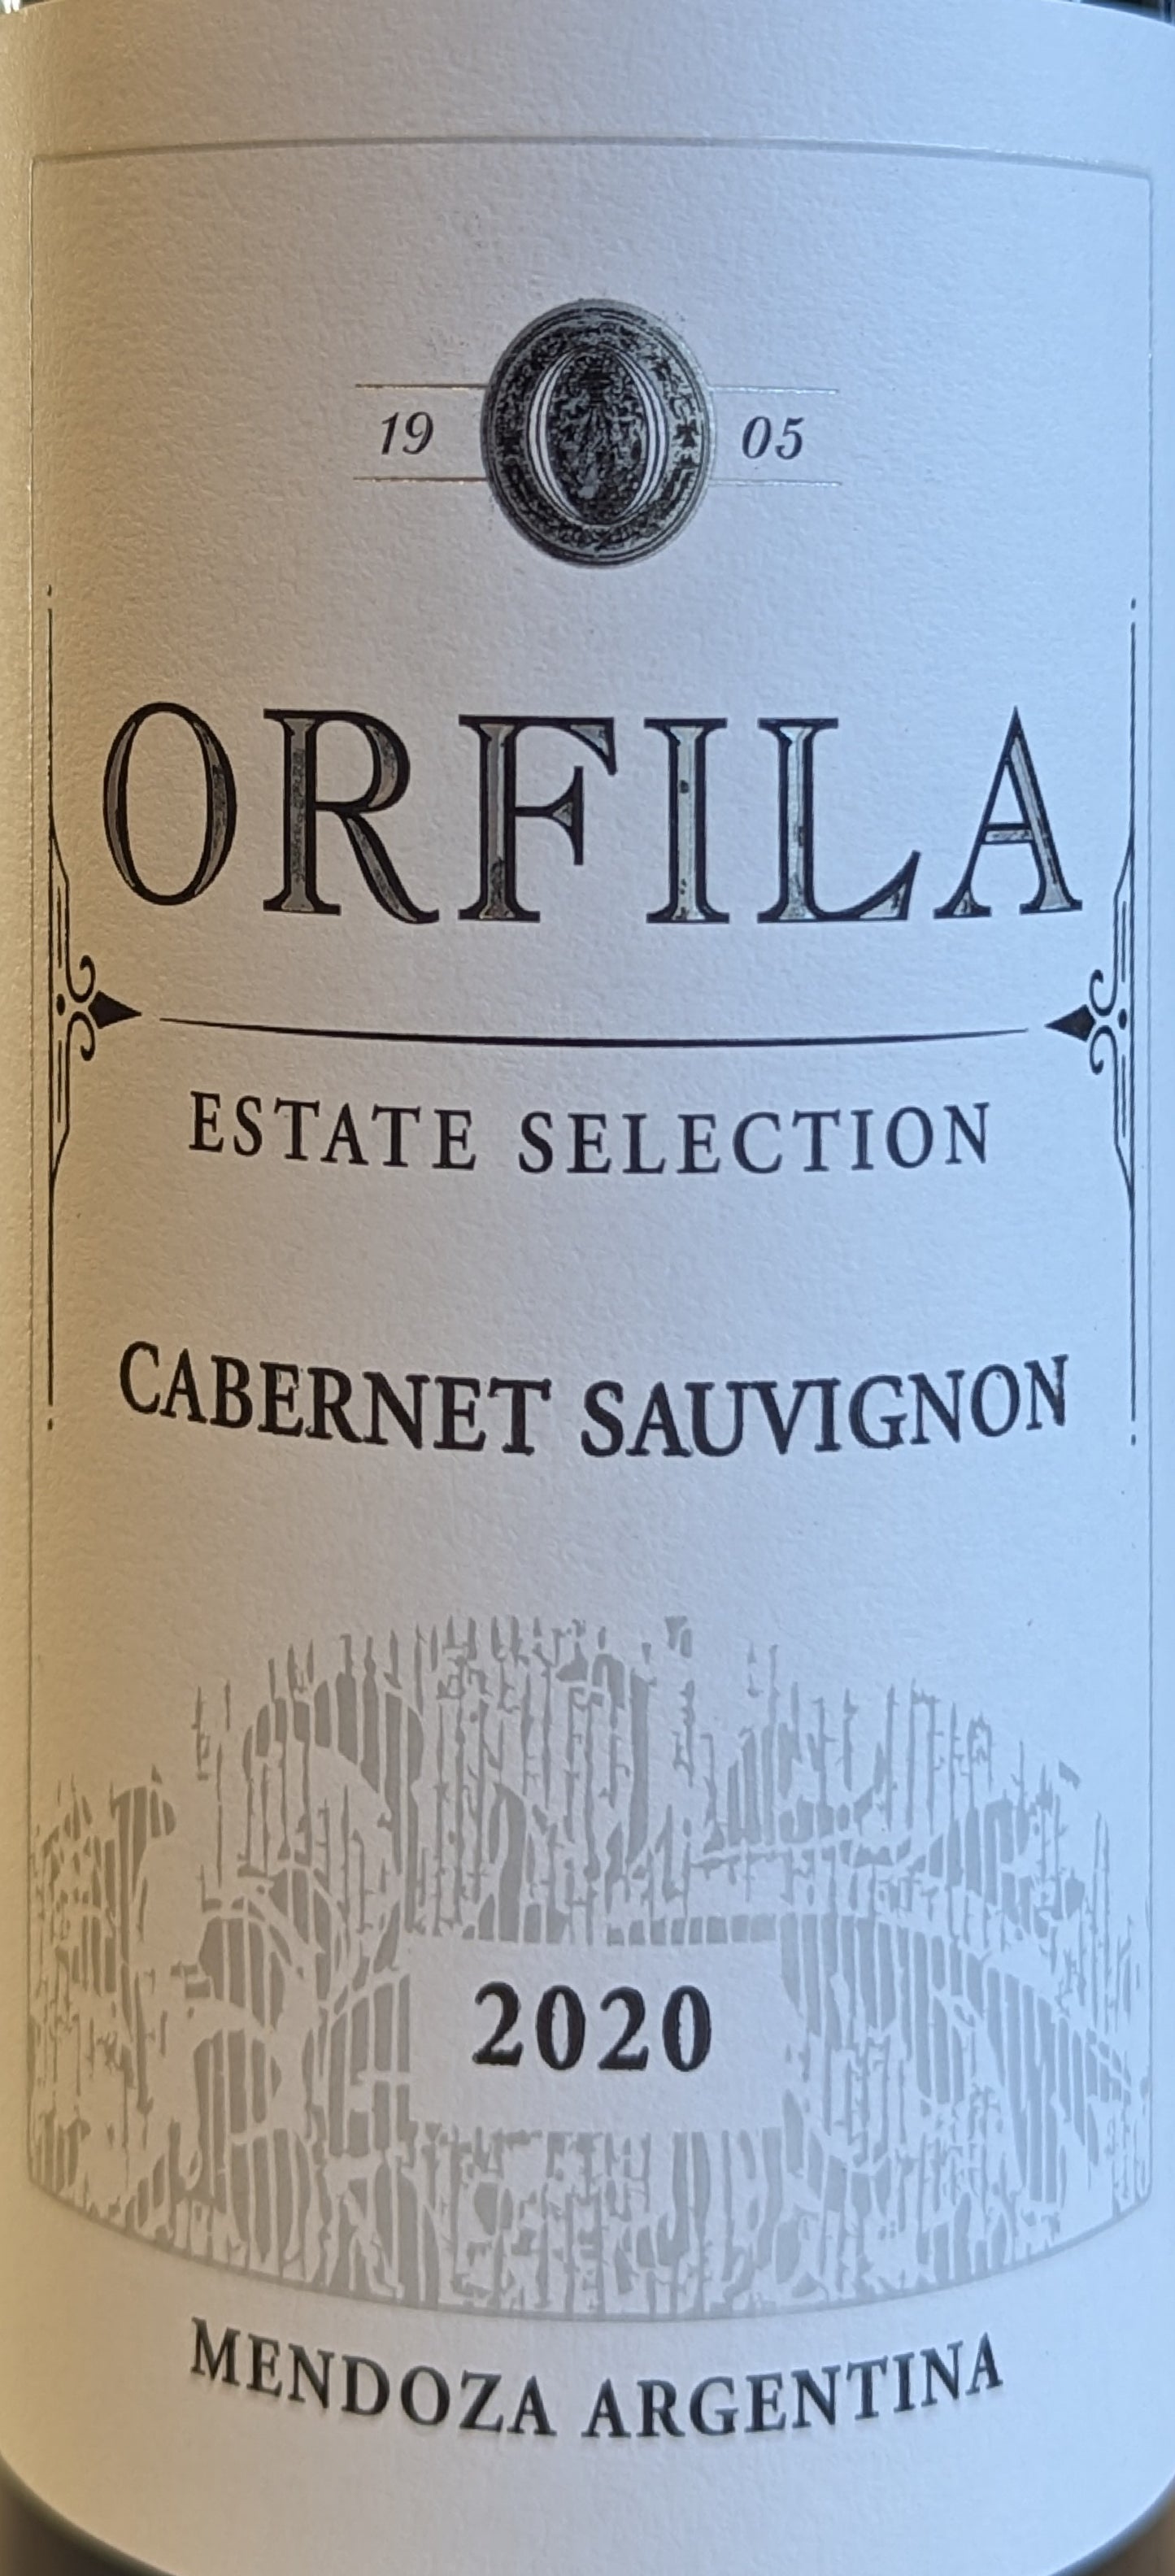 Orfila 'Estate Selection' - Cabernet Sauvignon